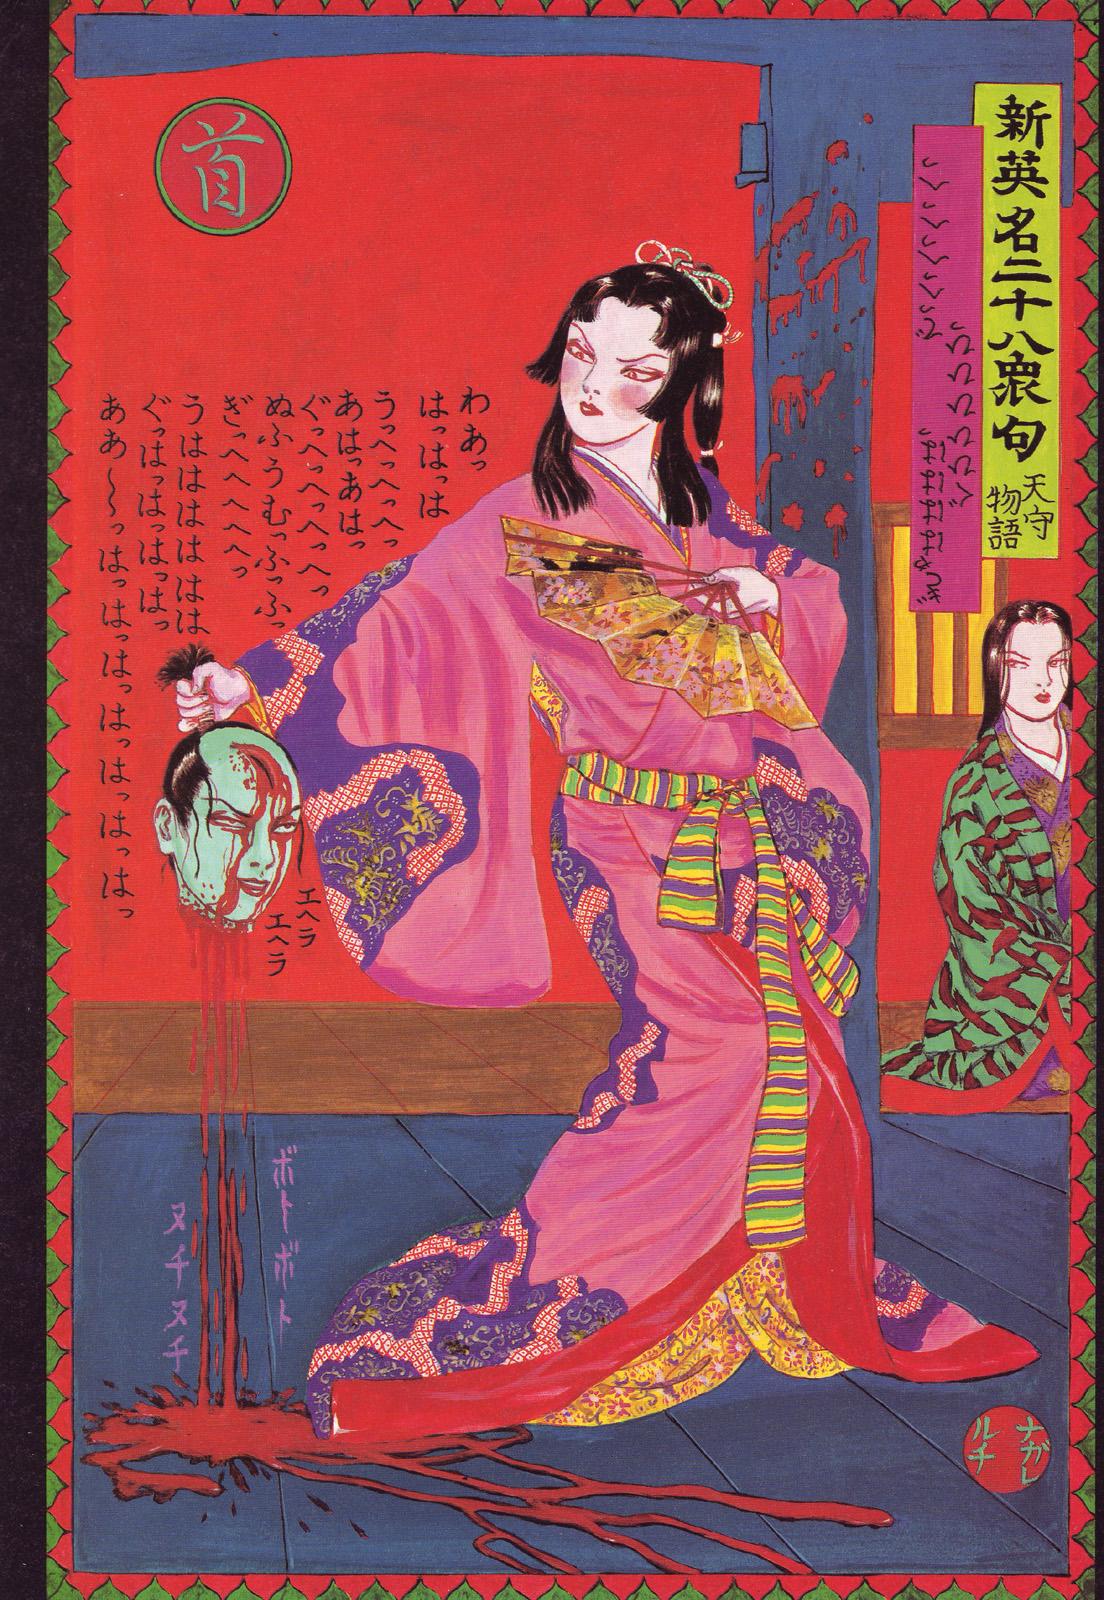 江戸昭和競作 - Bloody Ukiyo-e in 1866 & 1988 47